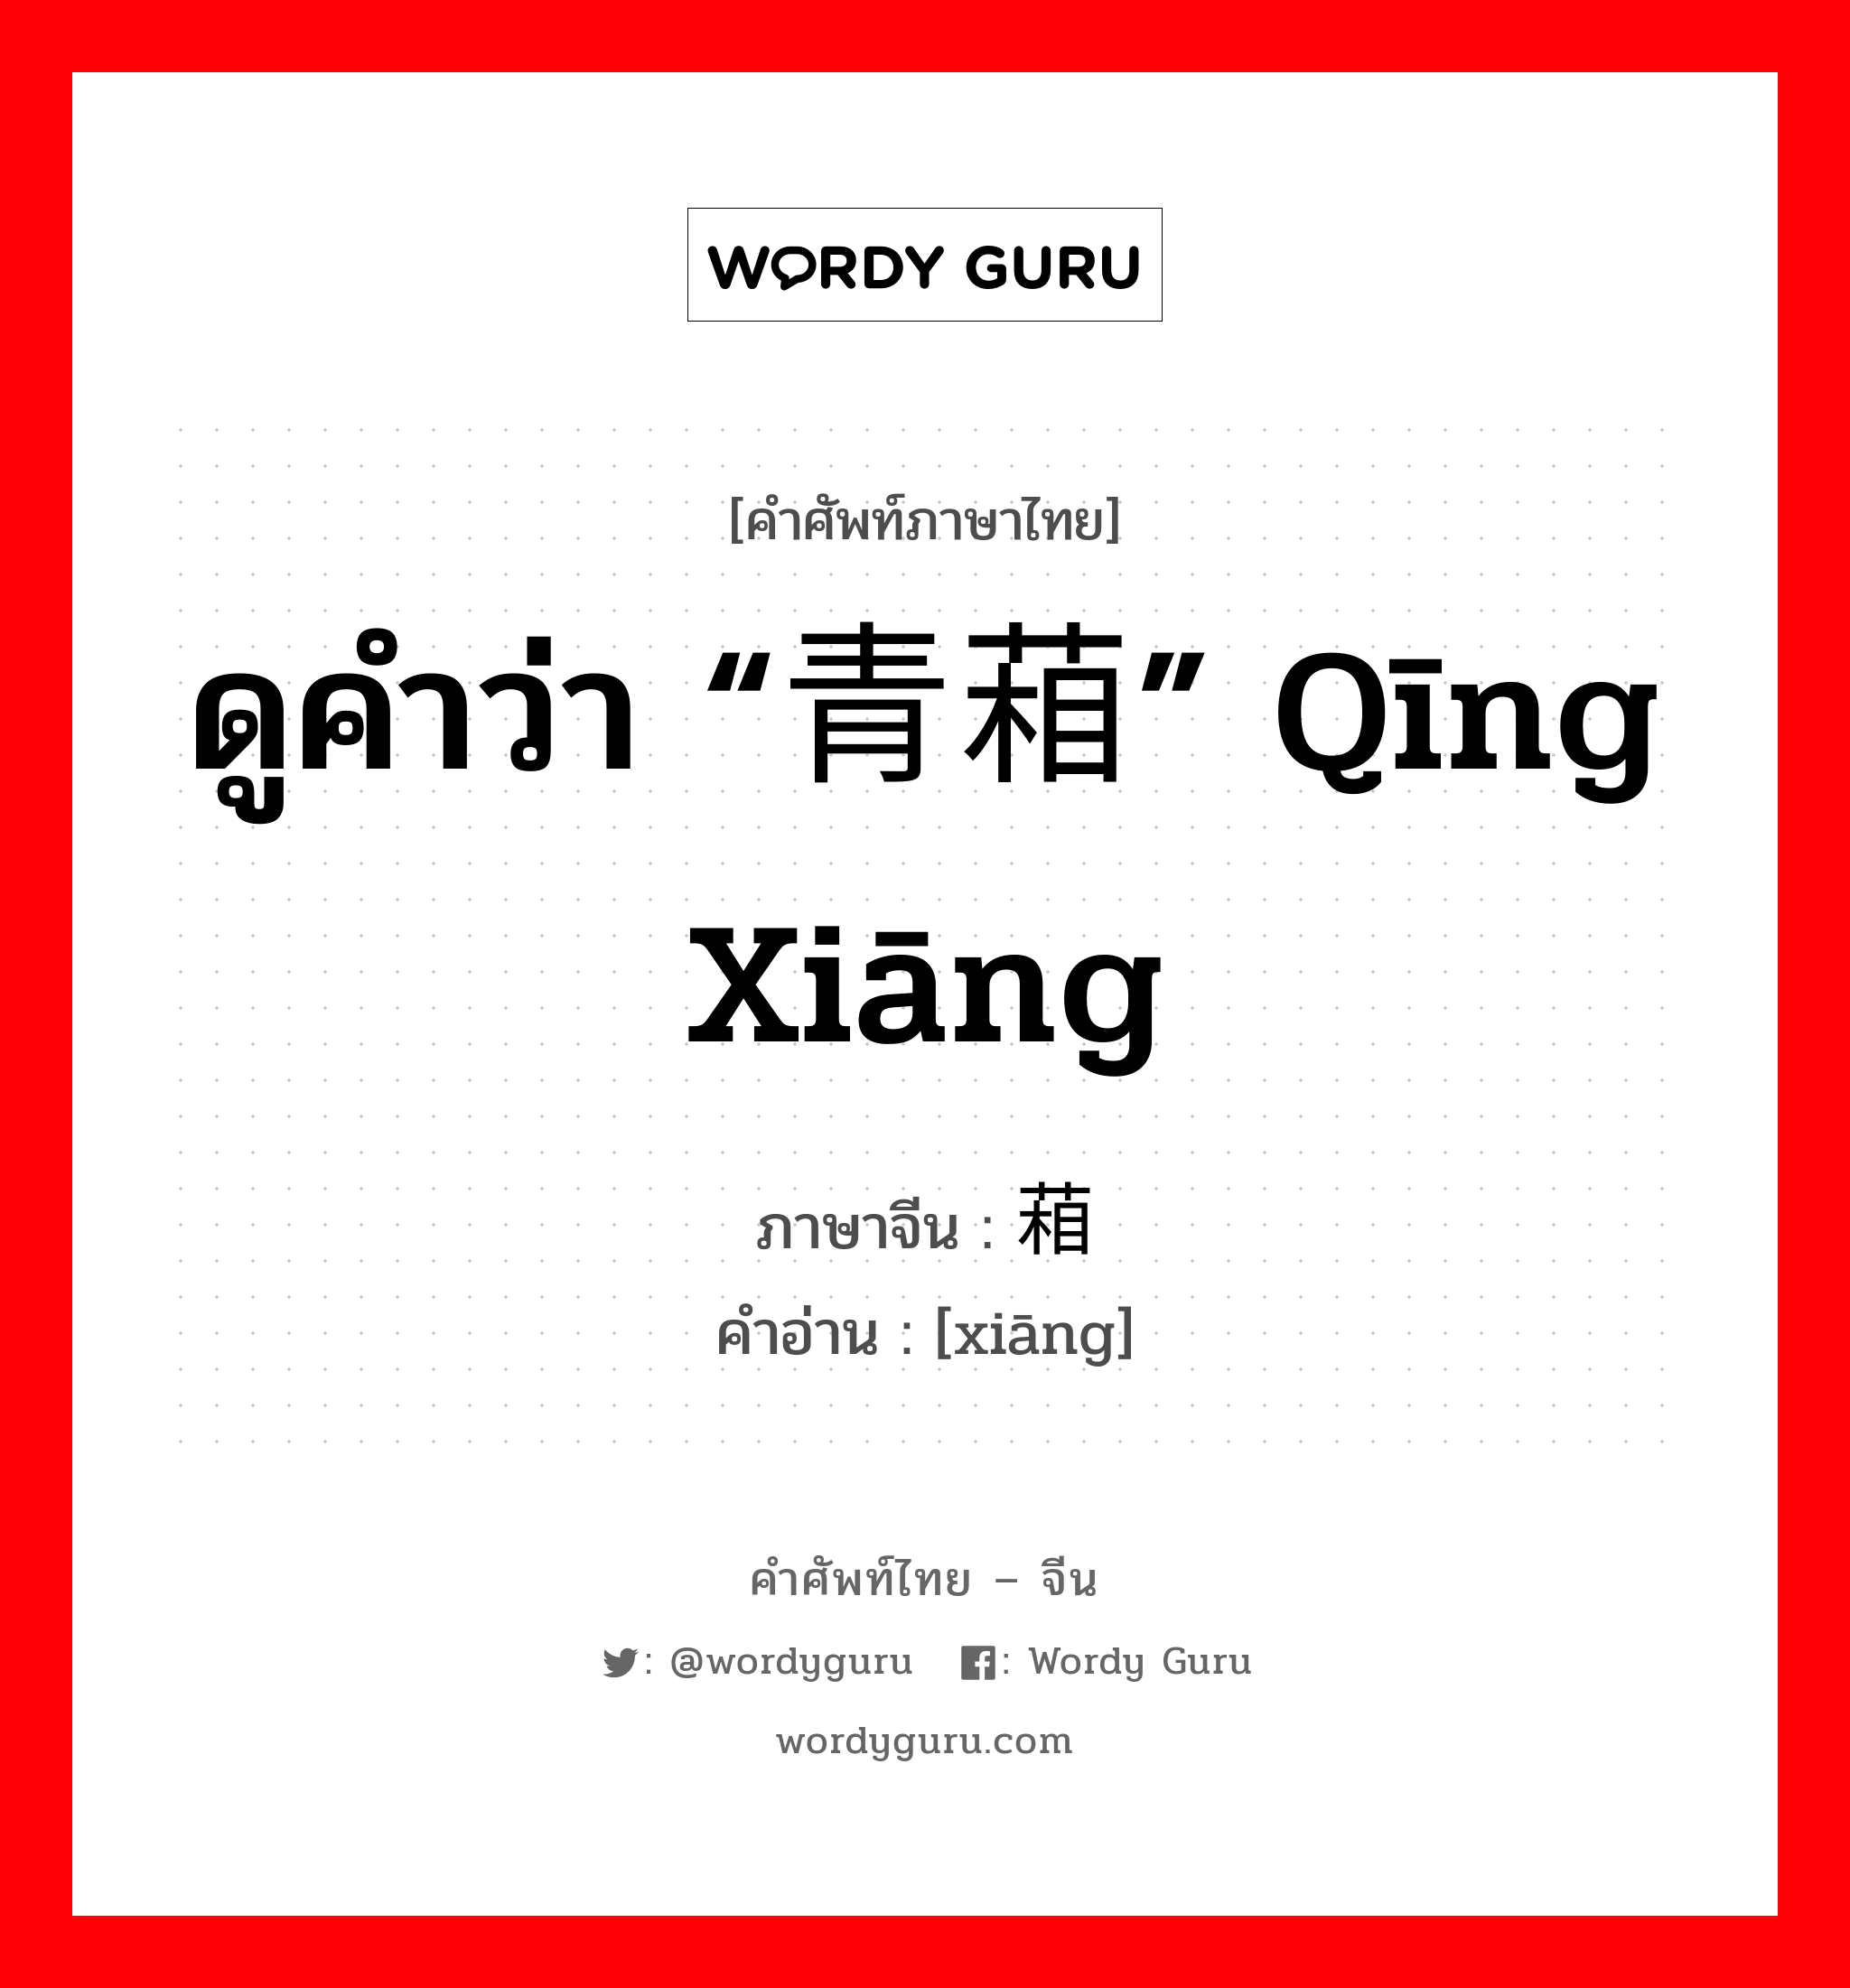 葙 ภาษาไทย?, คำศัพท์ภาษาไทย - จีน 葙 ภาษาจีน ดูคำว่า “青葙” qīng xiāng คำอ่าน [xiāng]